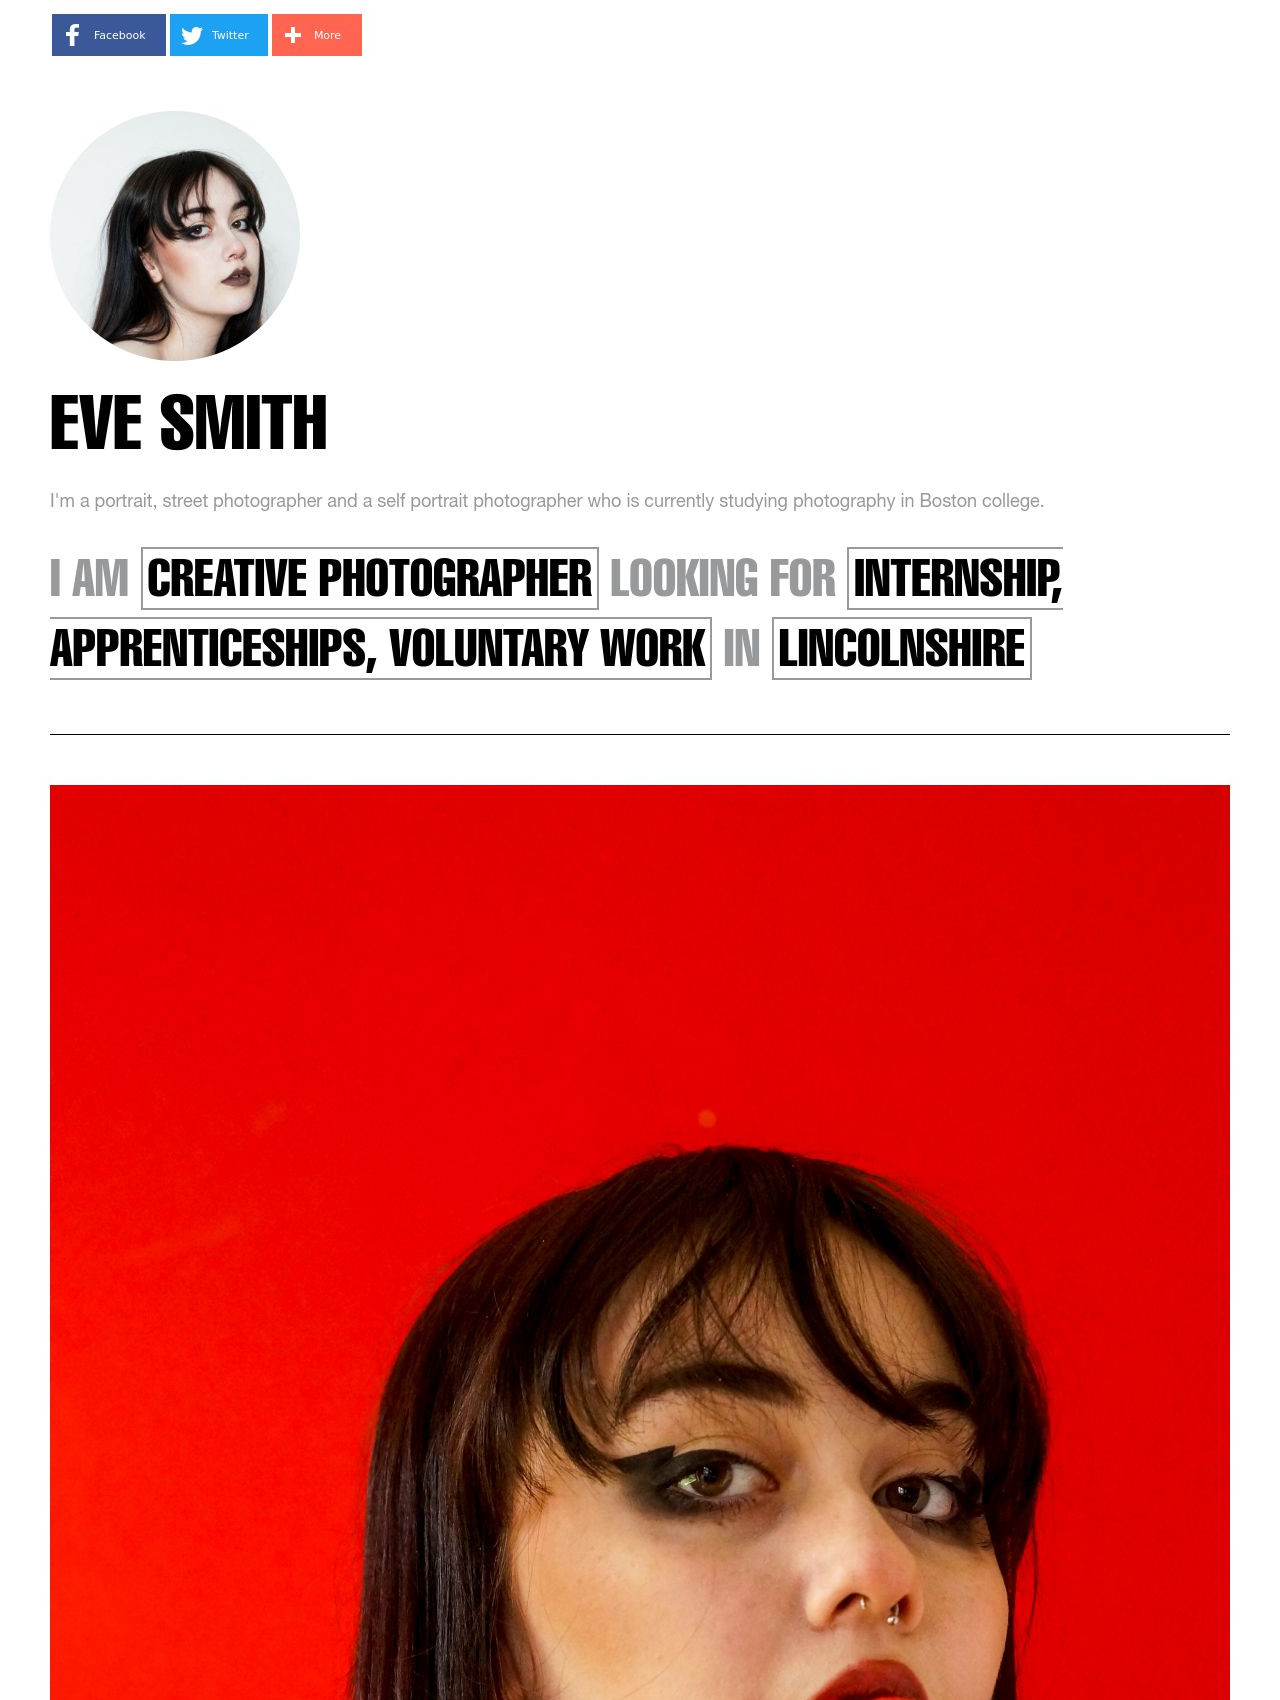 Eve Smith